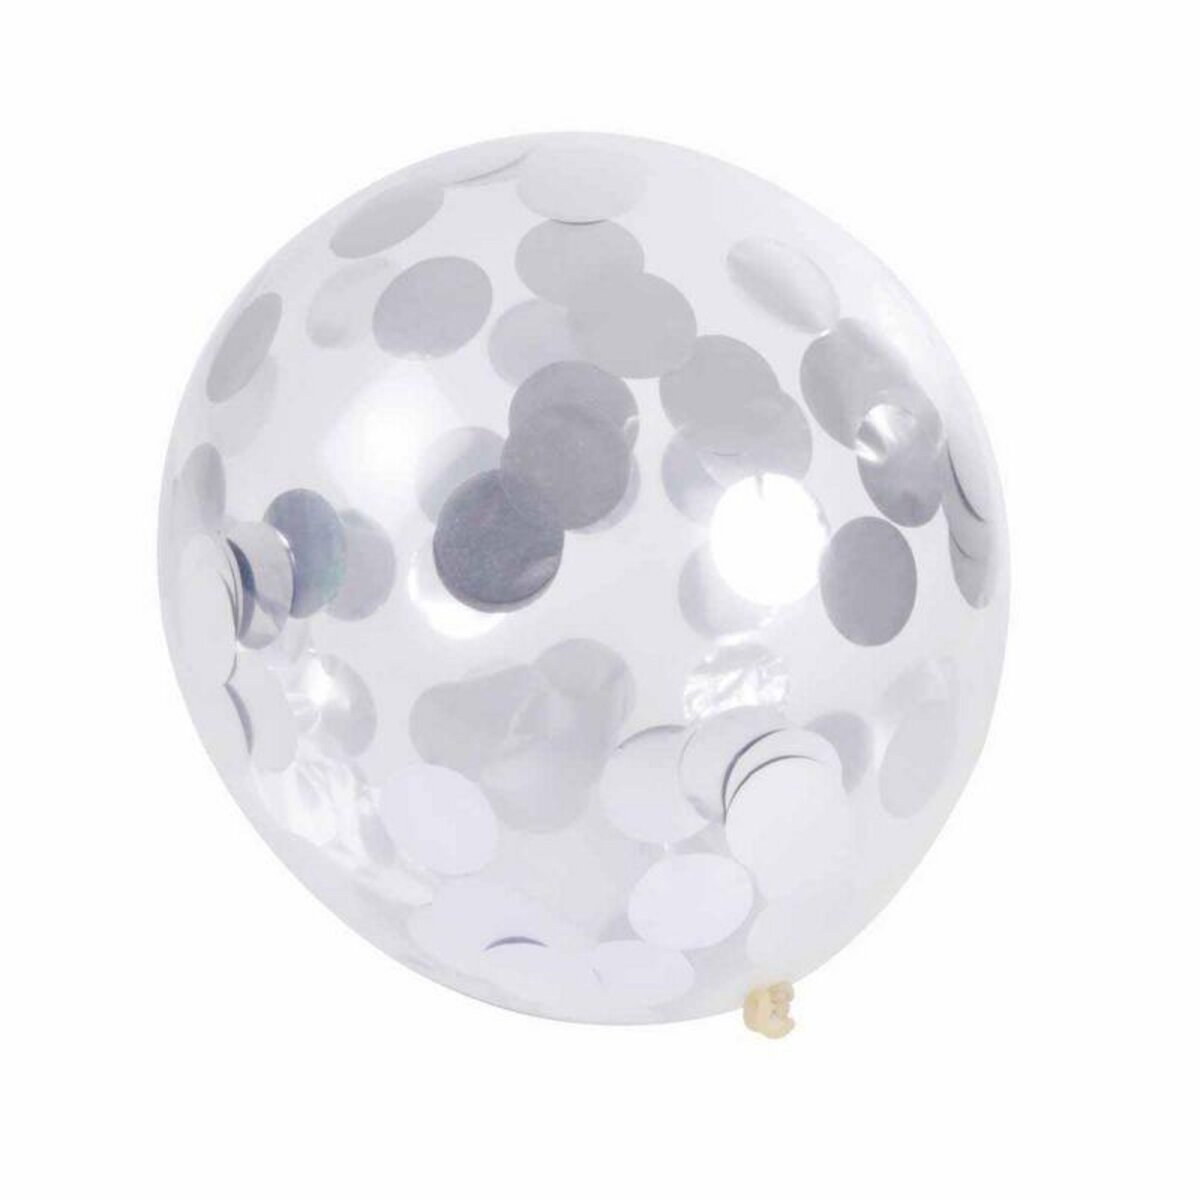 Paris Prix Lot de 6 Ballons Gonflables Confettis 30cm Multicolore pas cher  